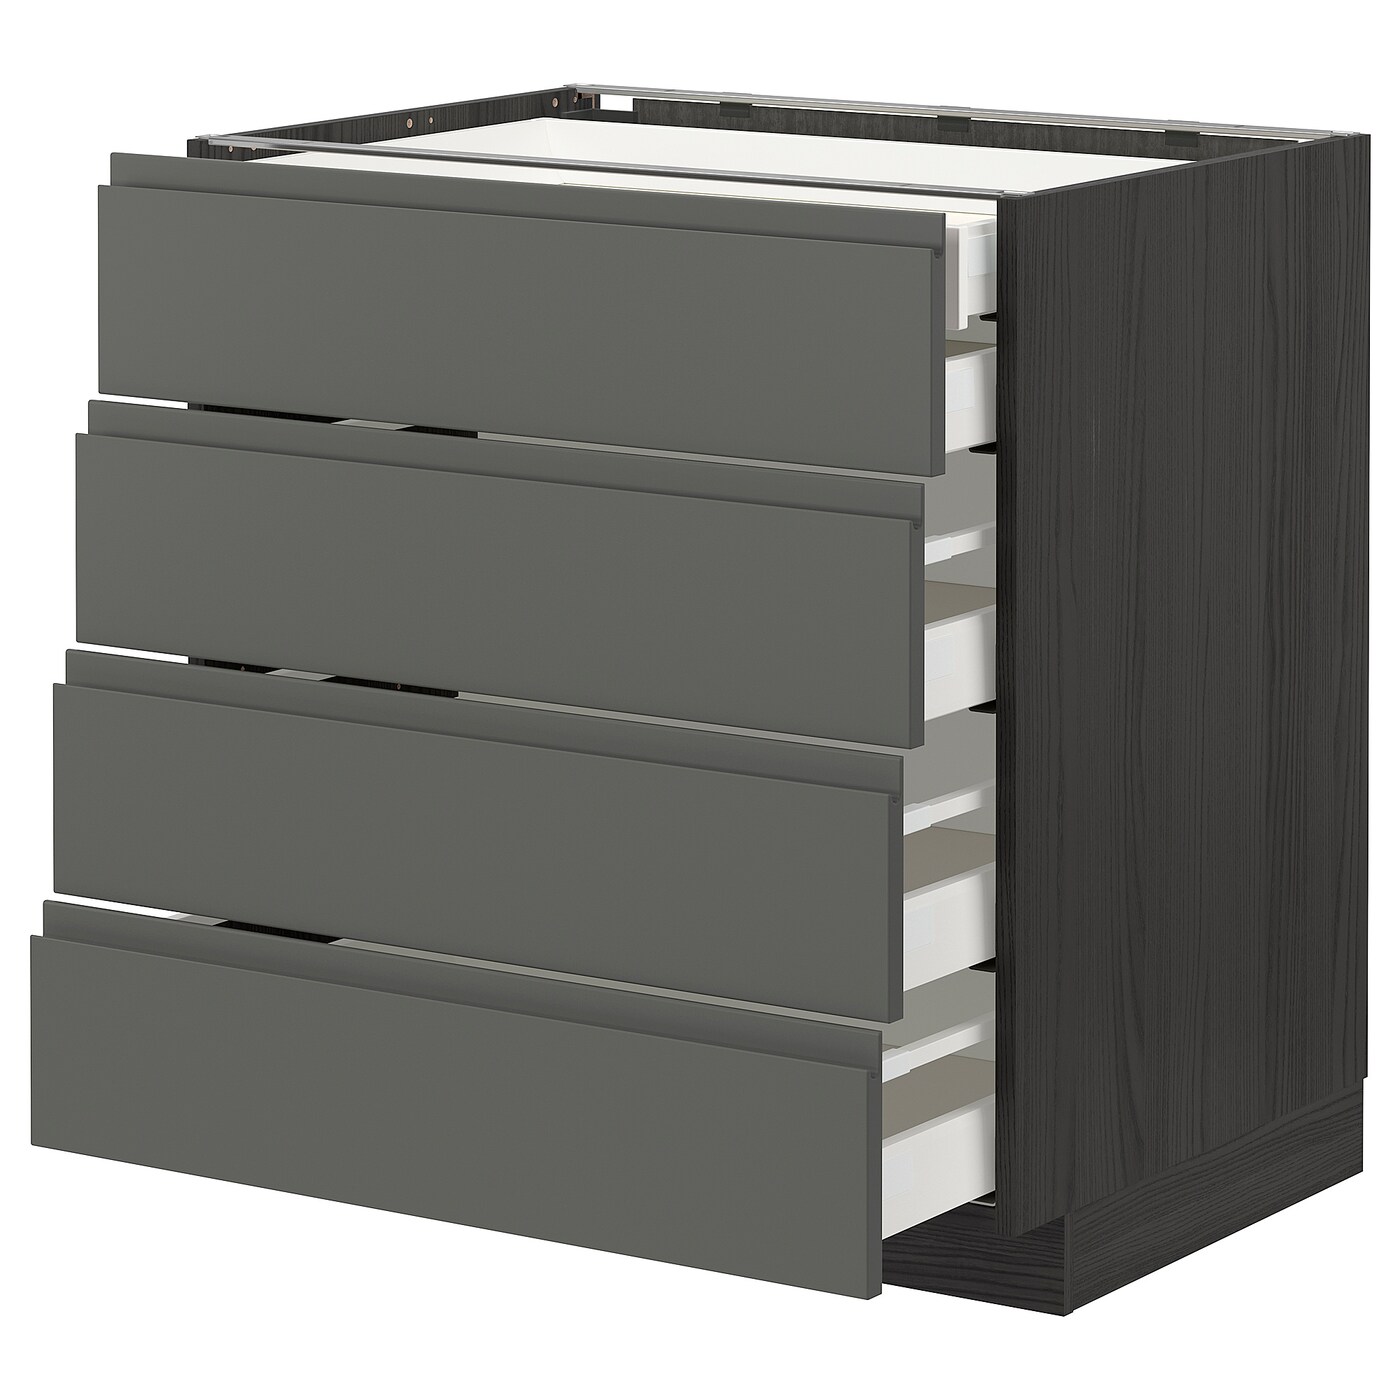 Напольный кухонный шкаф  - IKEA METOD MAXIMERA, 88x62x80см, серый/темно-серый, МЕТОД МАКСИМЕРА ИКЕА